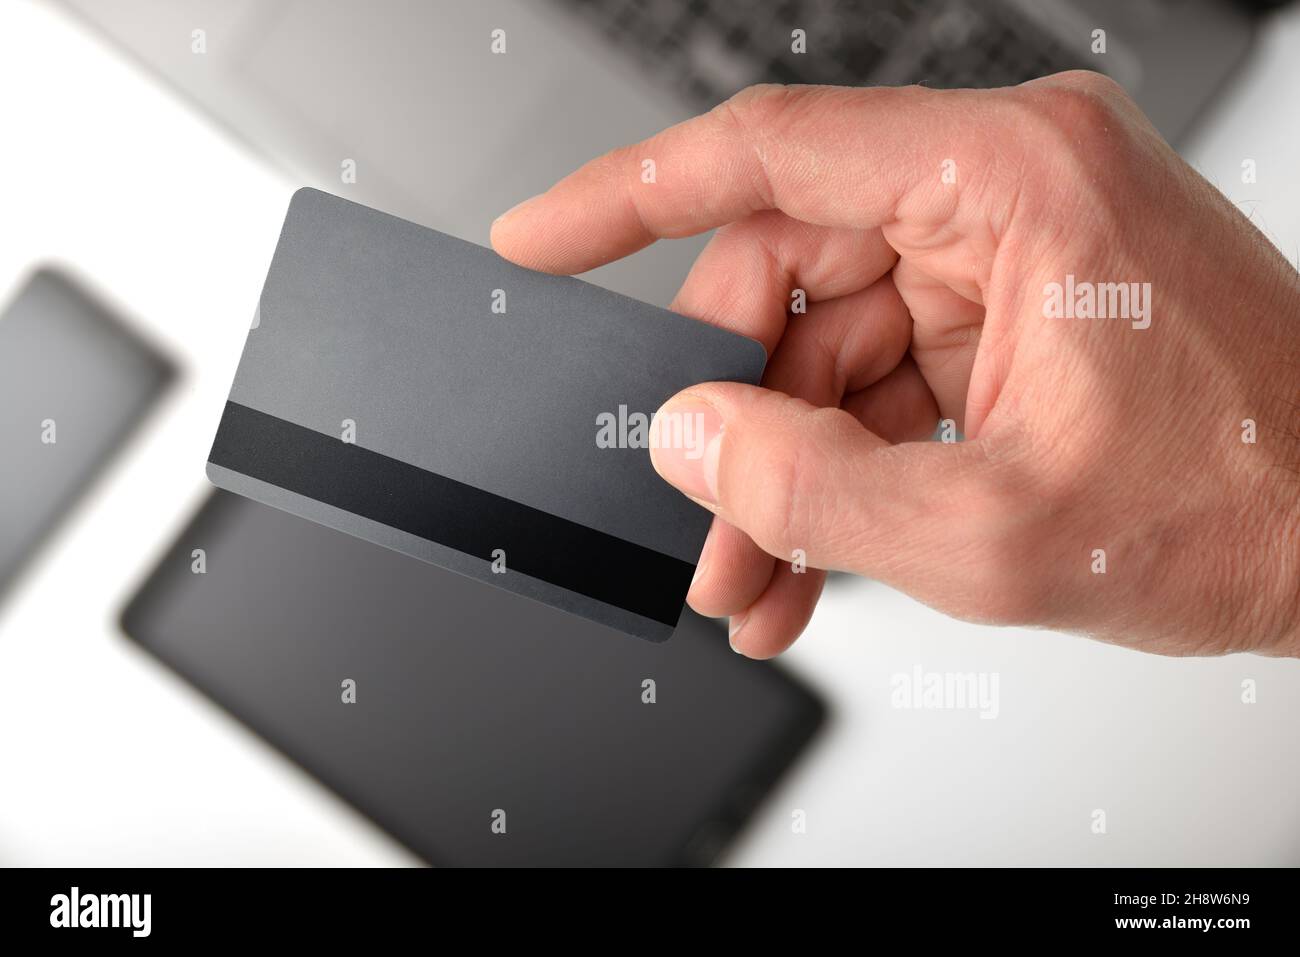 Concept de paiement électronique avec la main montrant la carte de crédit avec les appareils mobiles en arrière-plan.Vue de dessus. Banque D'Images